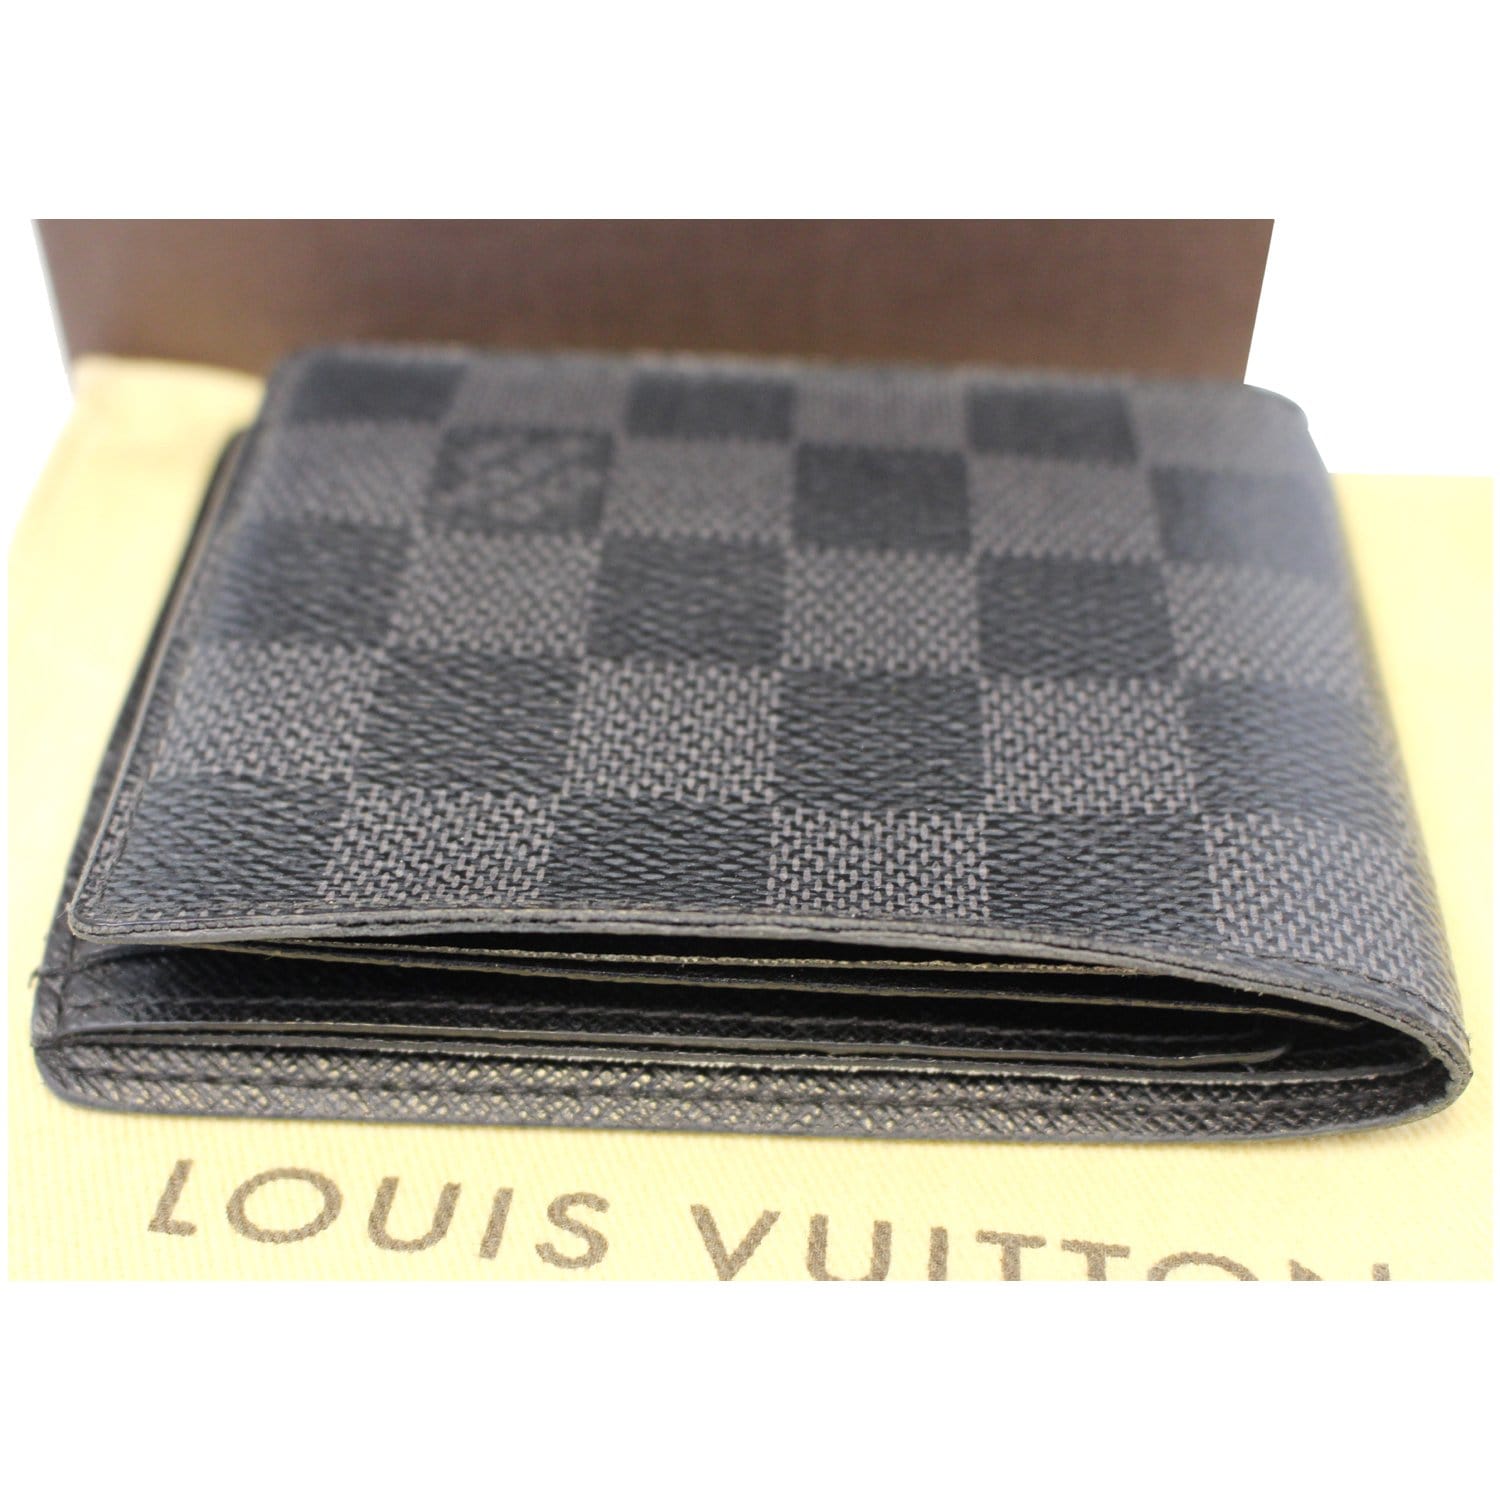 Louis Vuitton - Multiple Wallet - Damier Canvas - Graphite - Men - Luxury